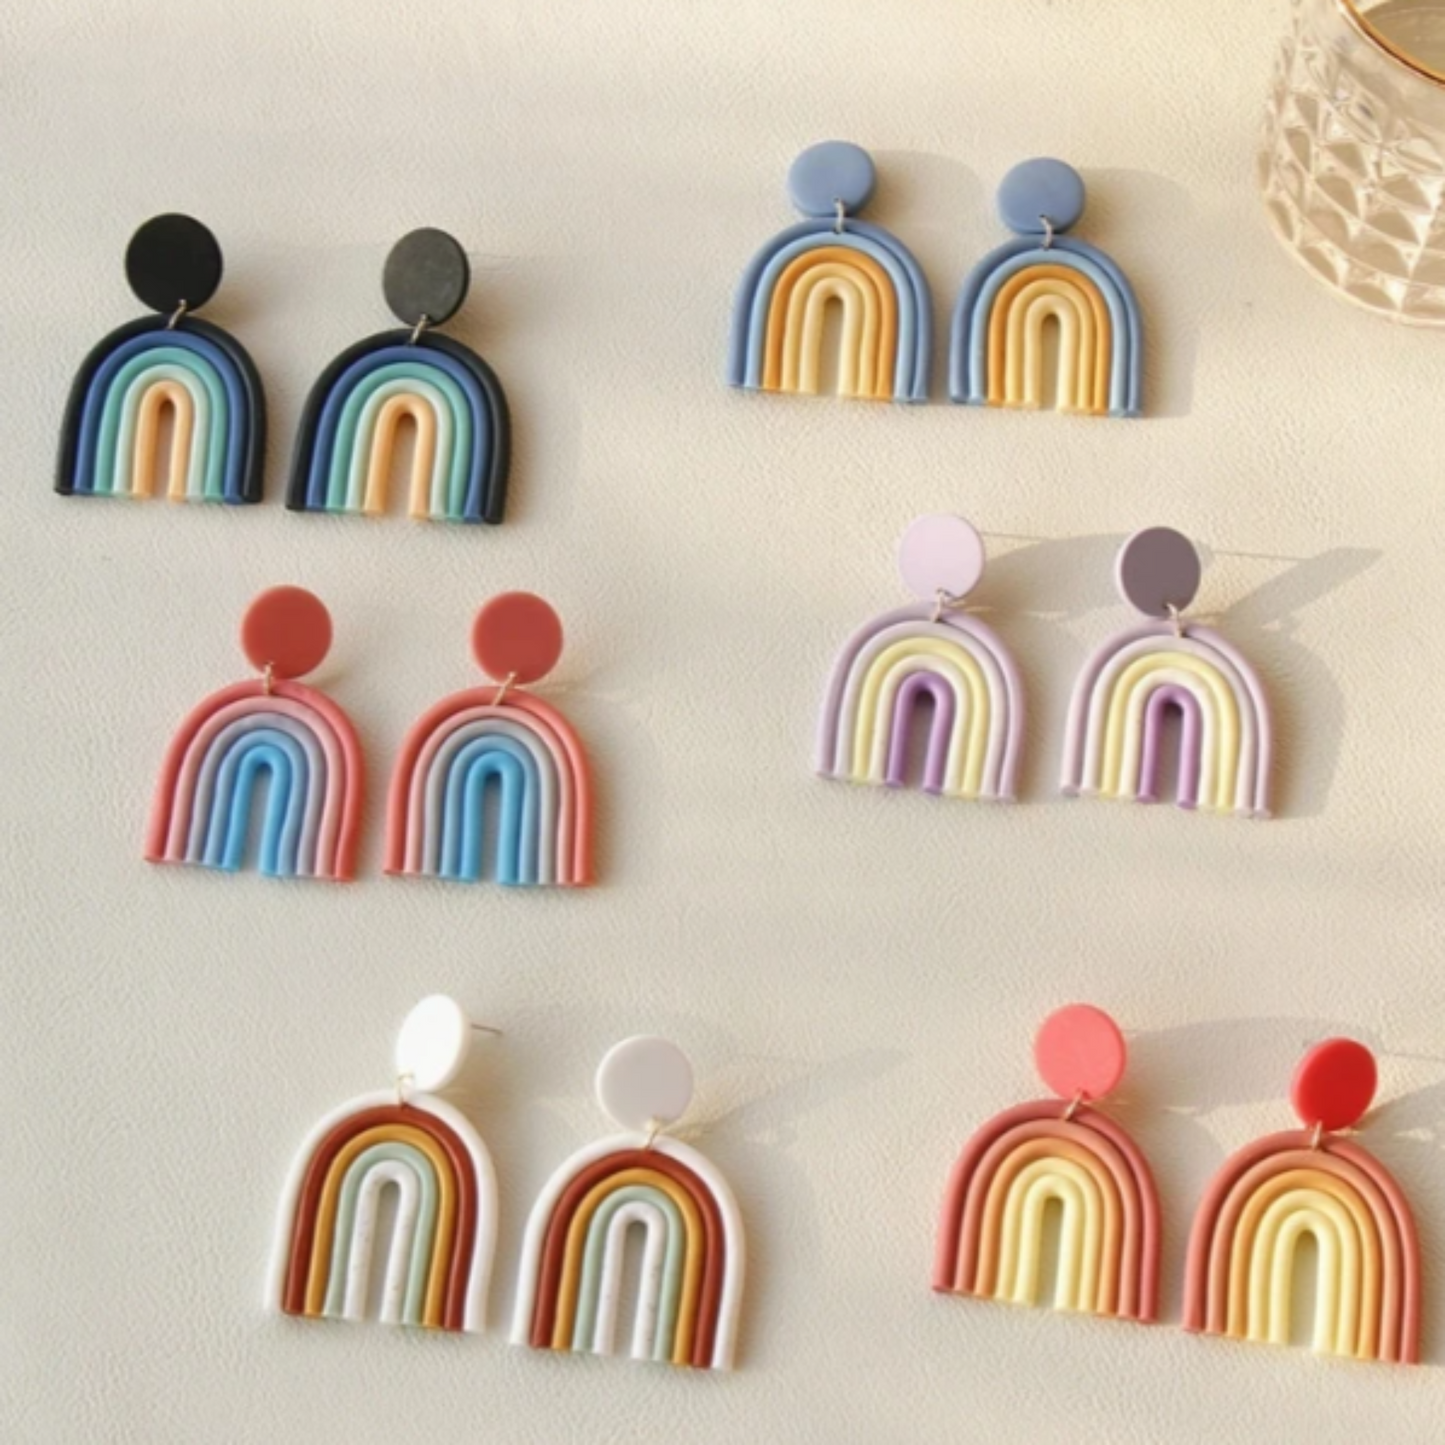 Polymeric Clay Rainbow Arch Earrings